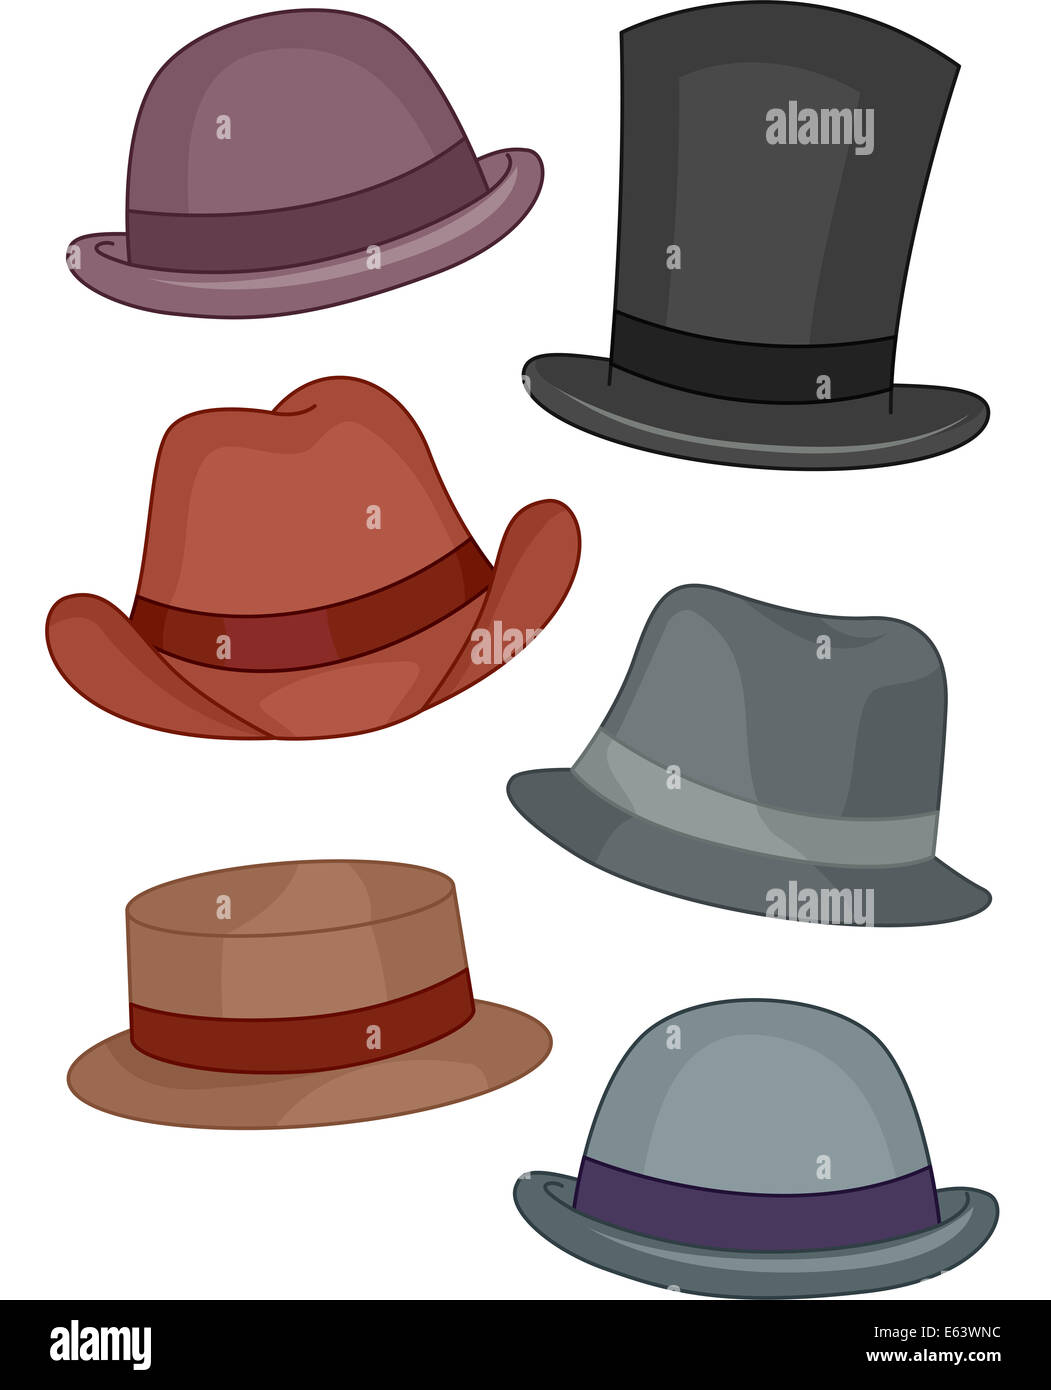 Ilustración con diferentes tipos sombreros para hombres Fotografía de stock -